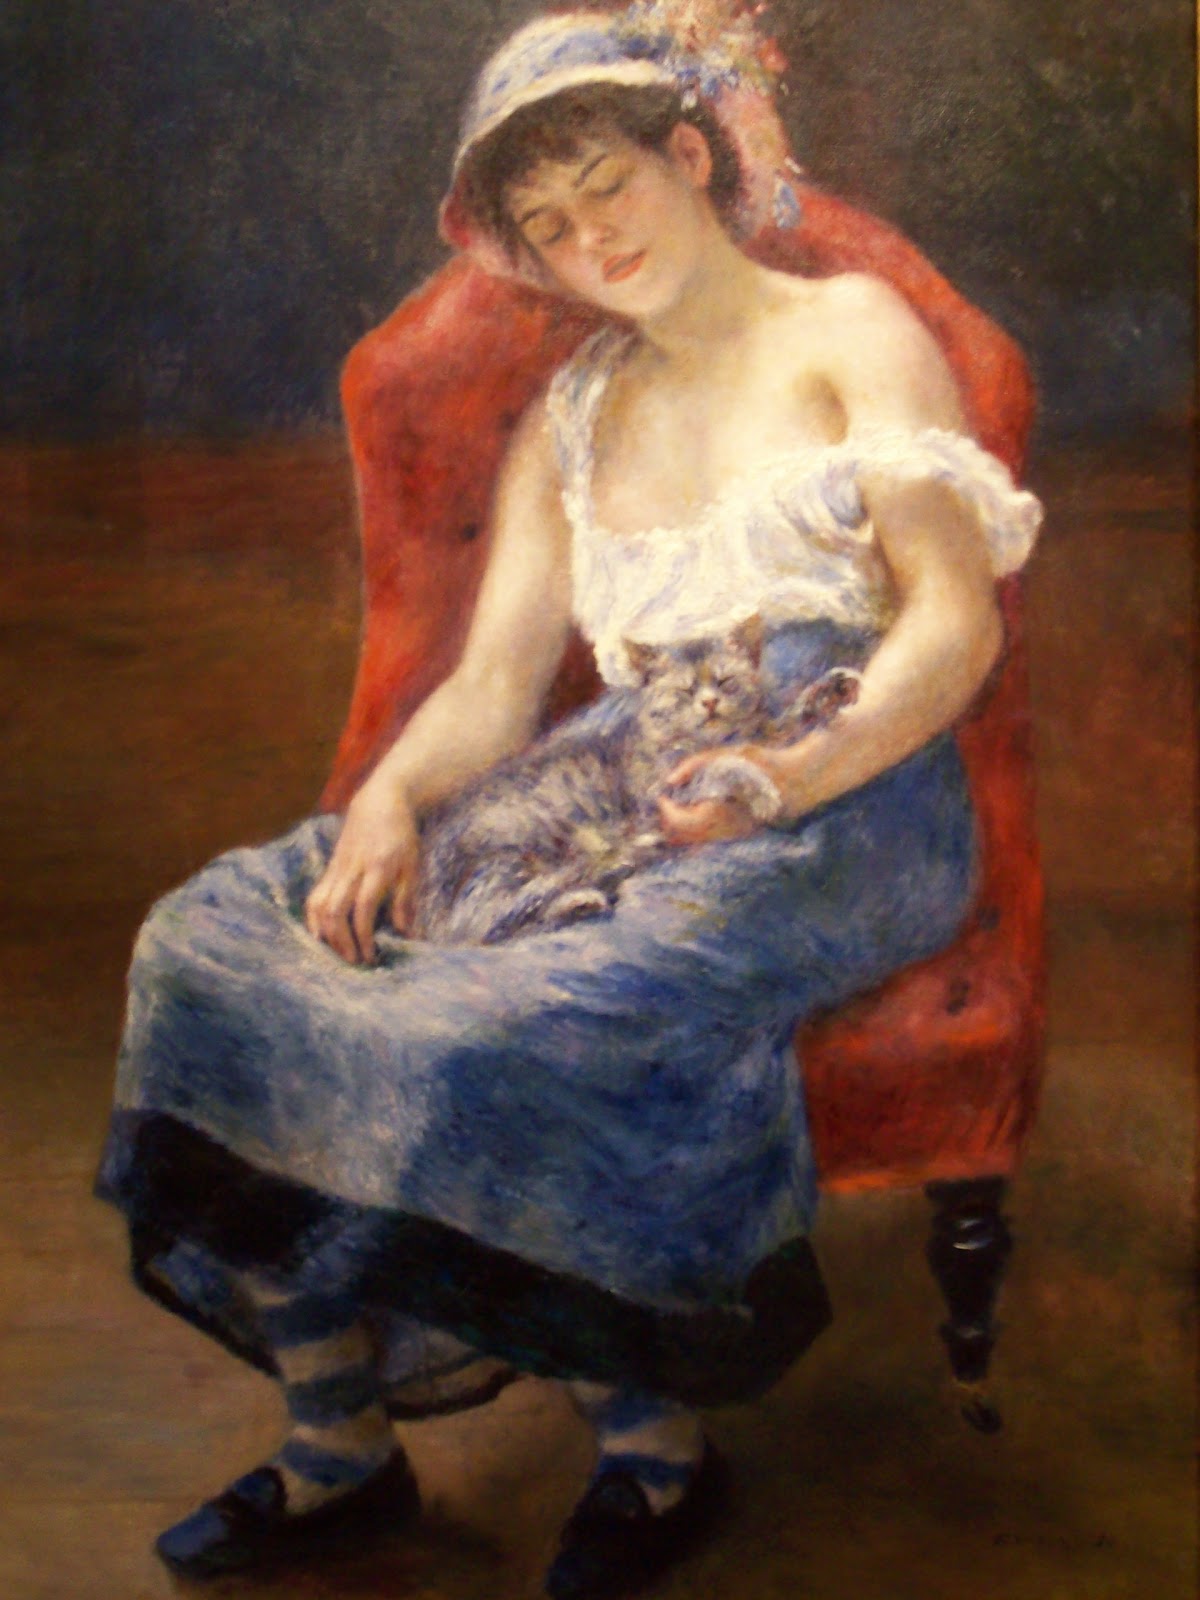 Pierre+Auguste+Renoir-1841-1-19 (132).jpg